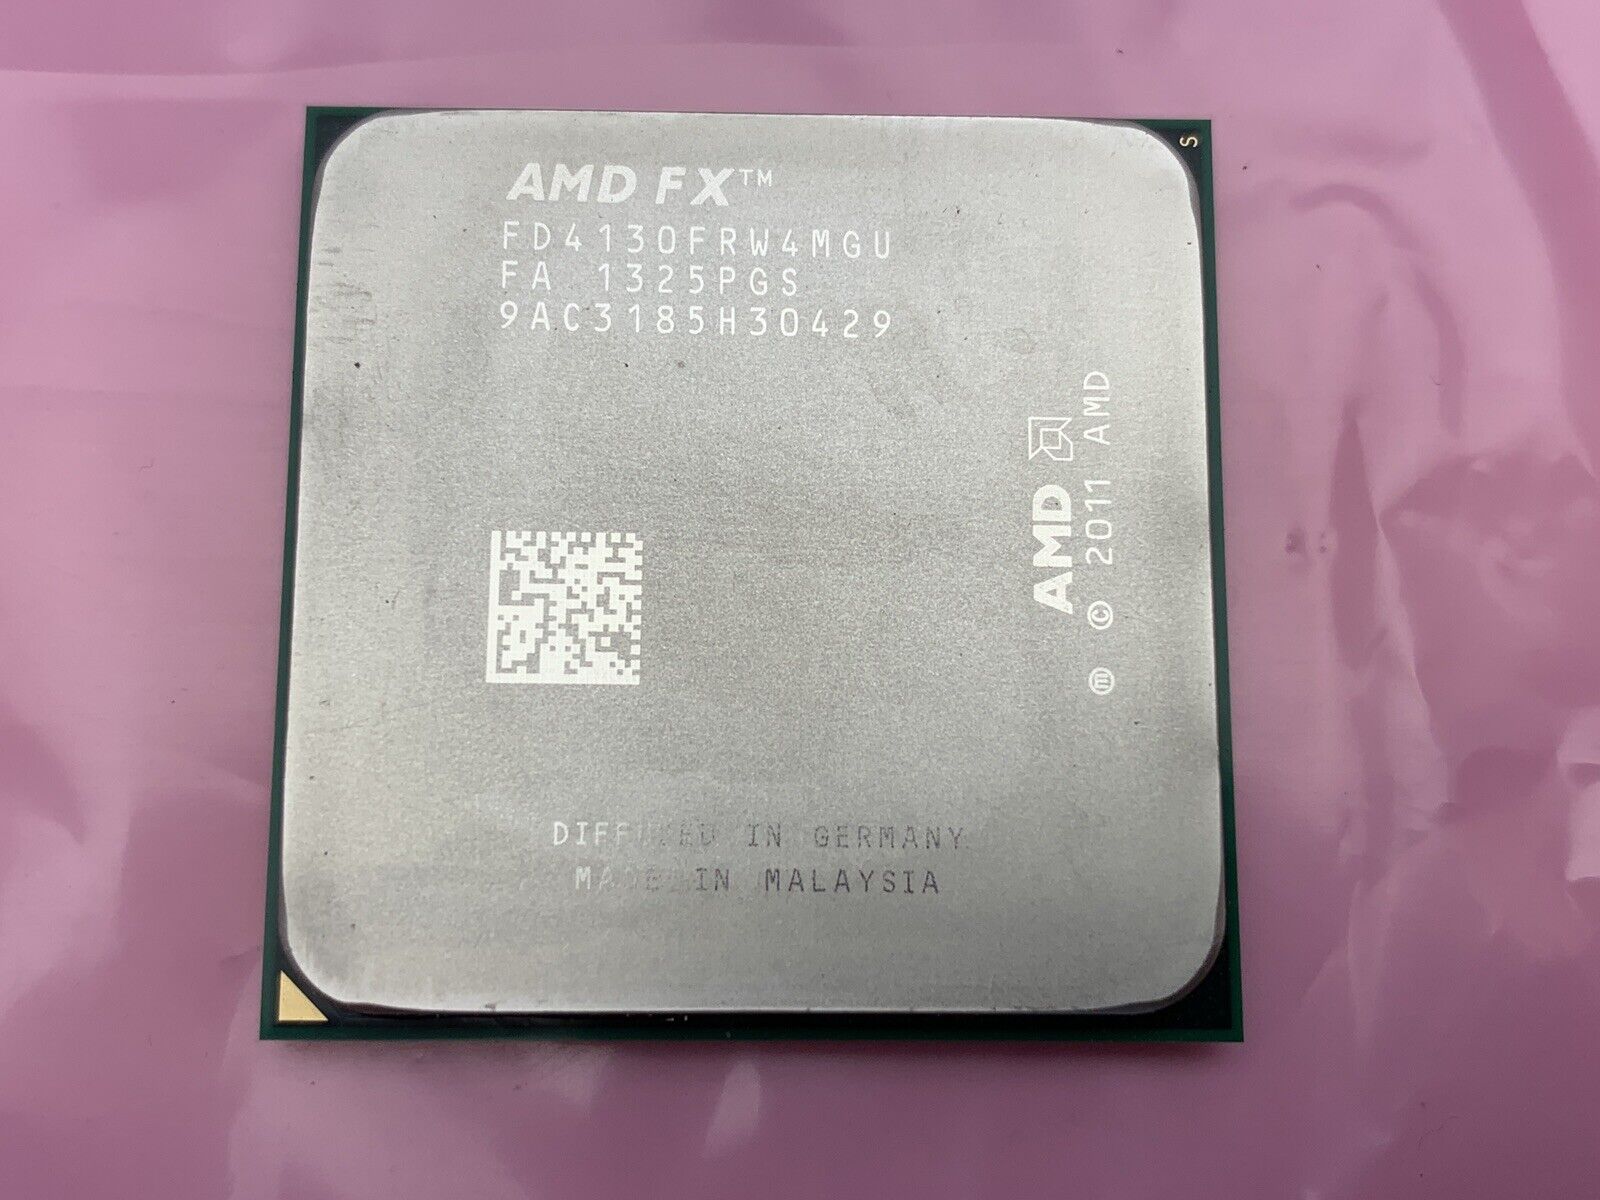 ✅ AMD FX-4130 CPU 3.8 GHz 4MB Socket AM3+ Black Edition Processor FD4130FRW4MGU